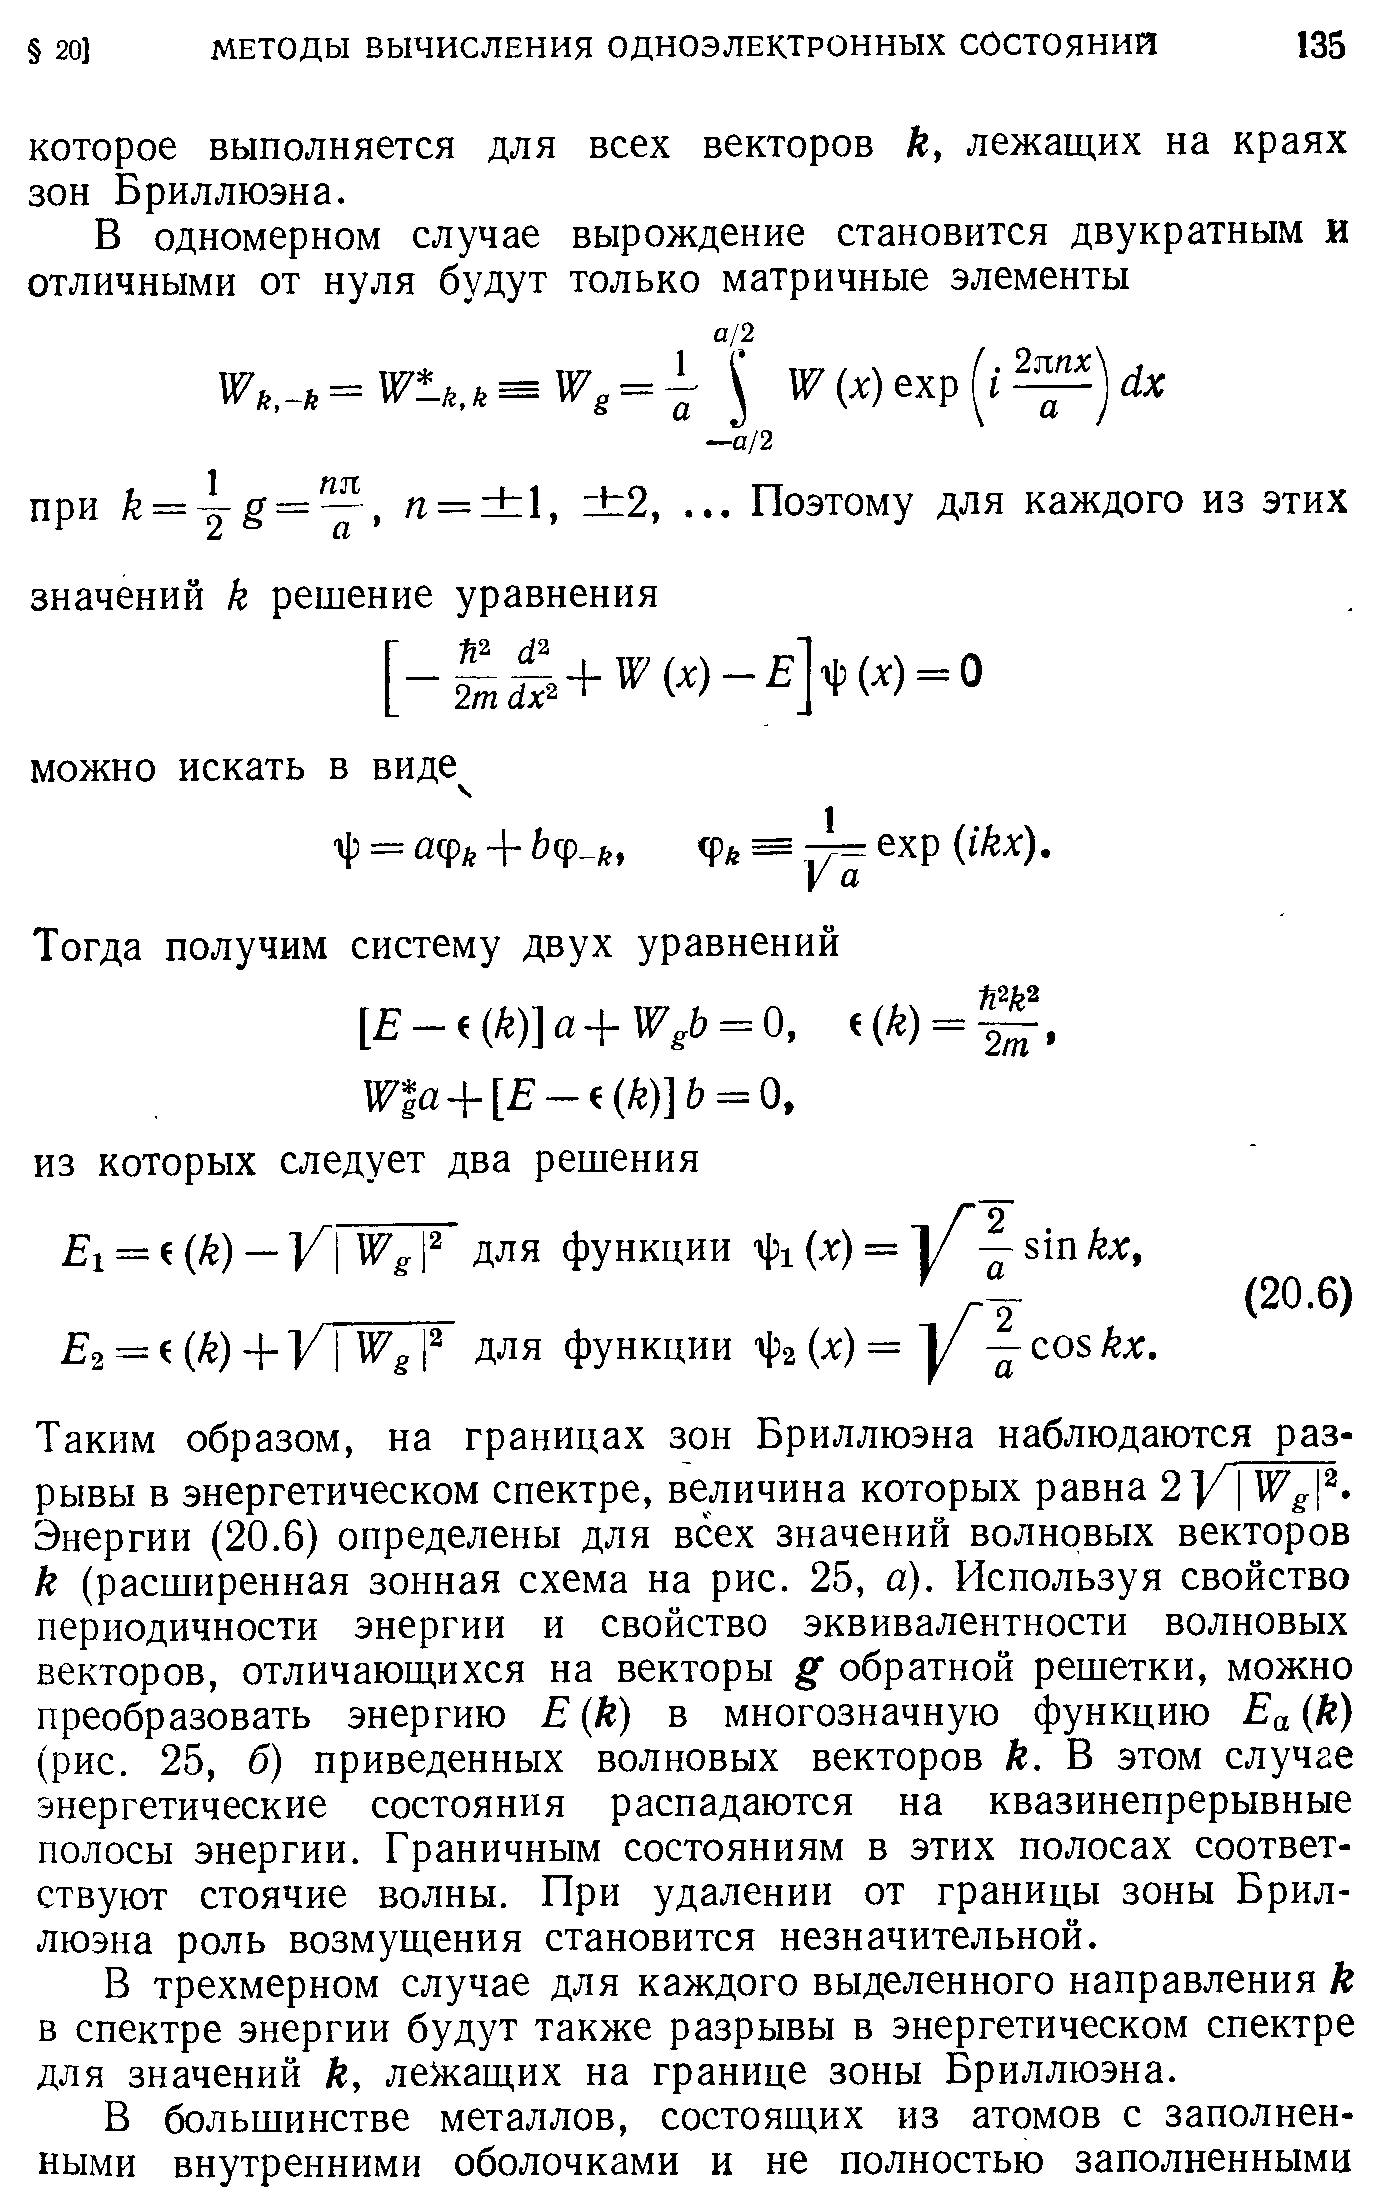 Ез = ((к) + для функции х)==у — С05 кх.
